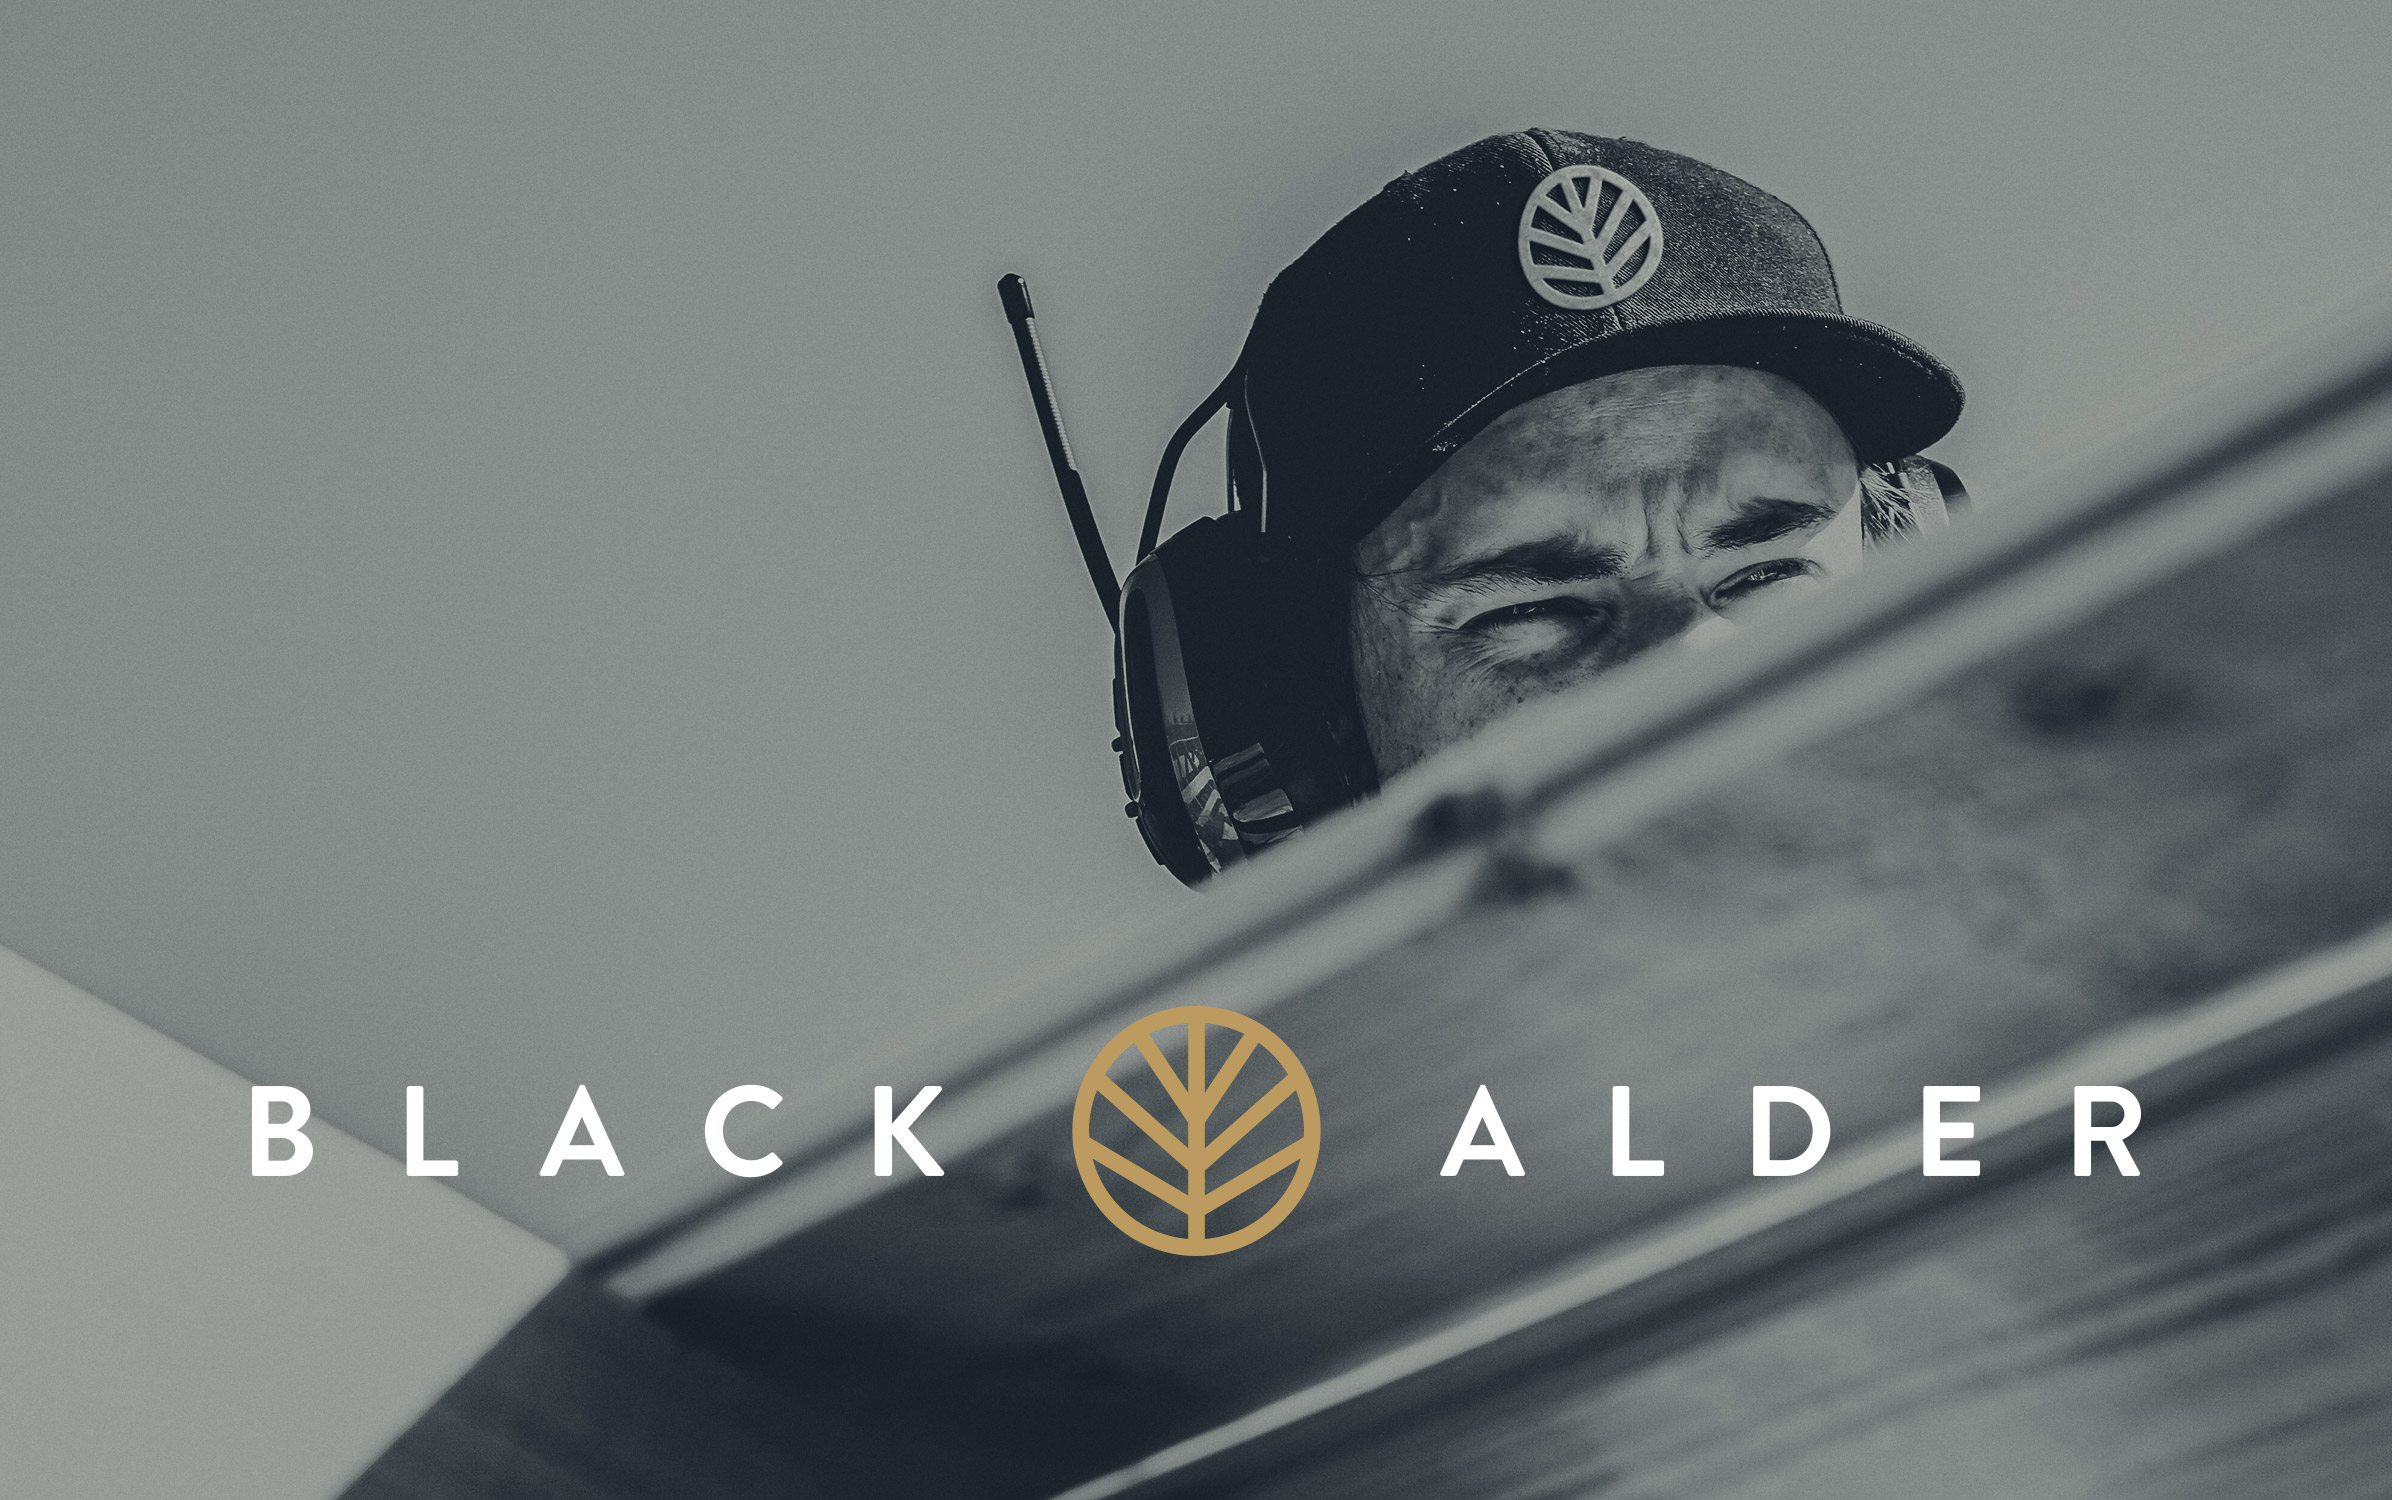 Black Alder Logo with construction worker with Black Alder cap